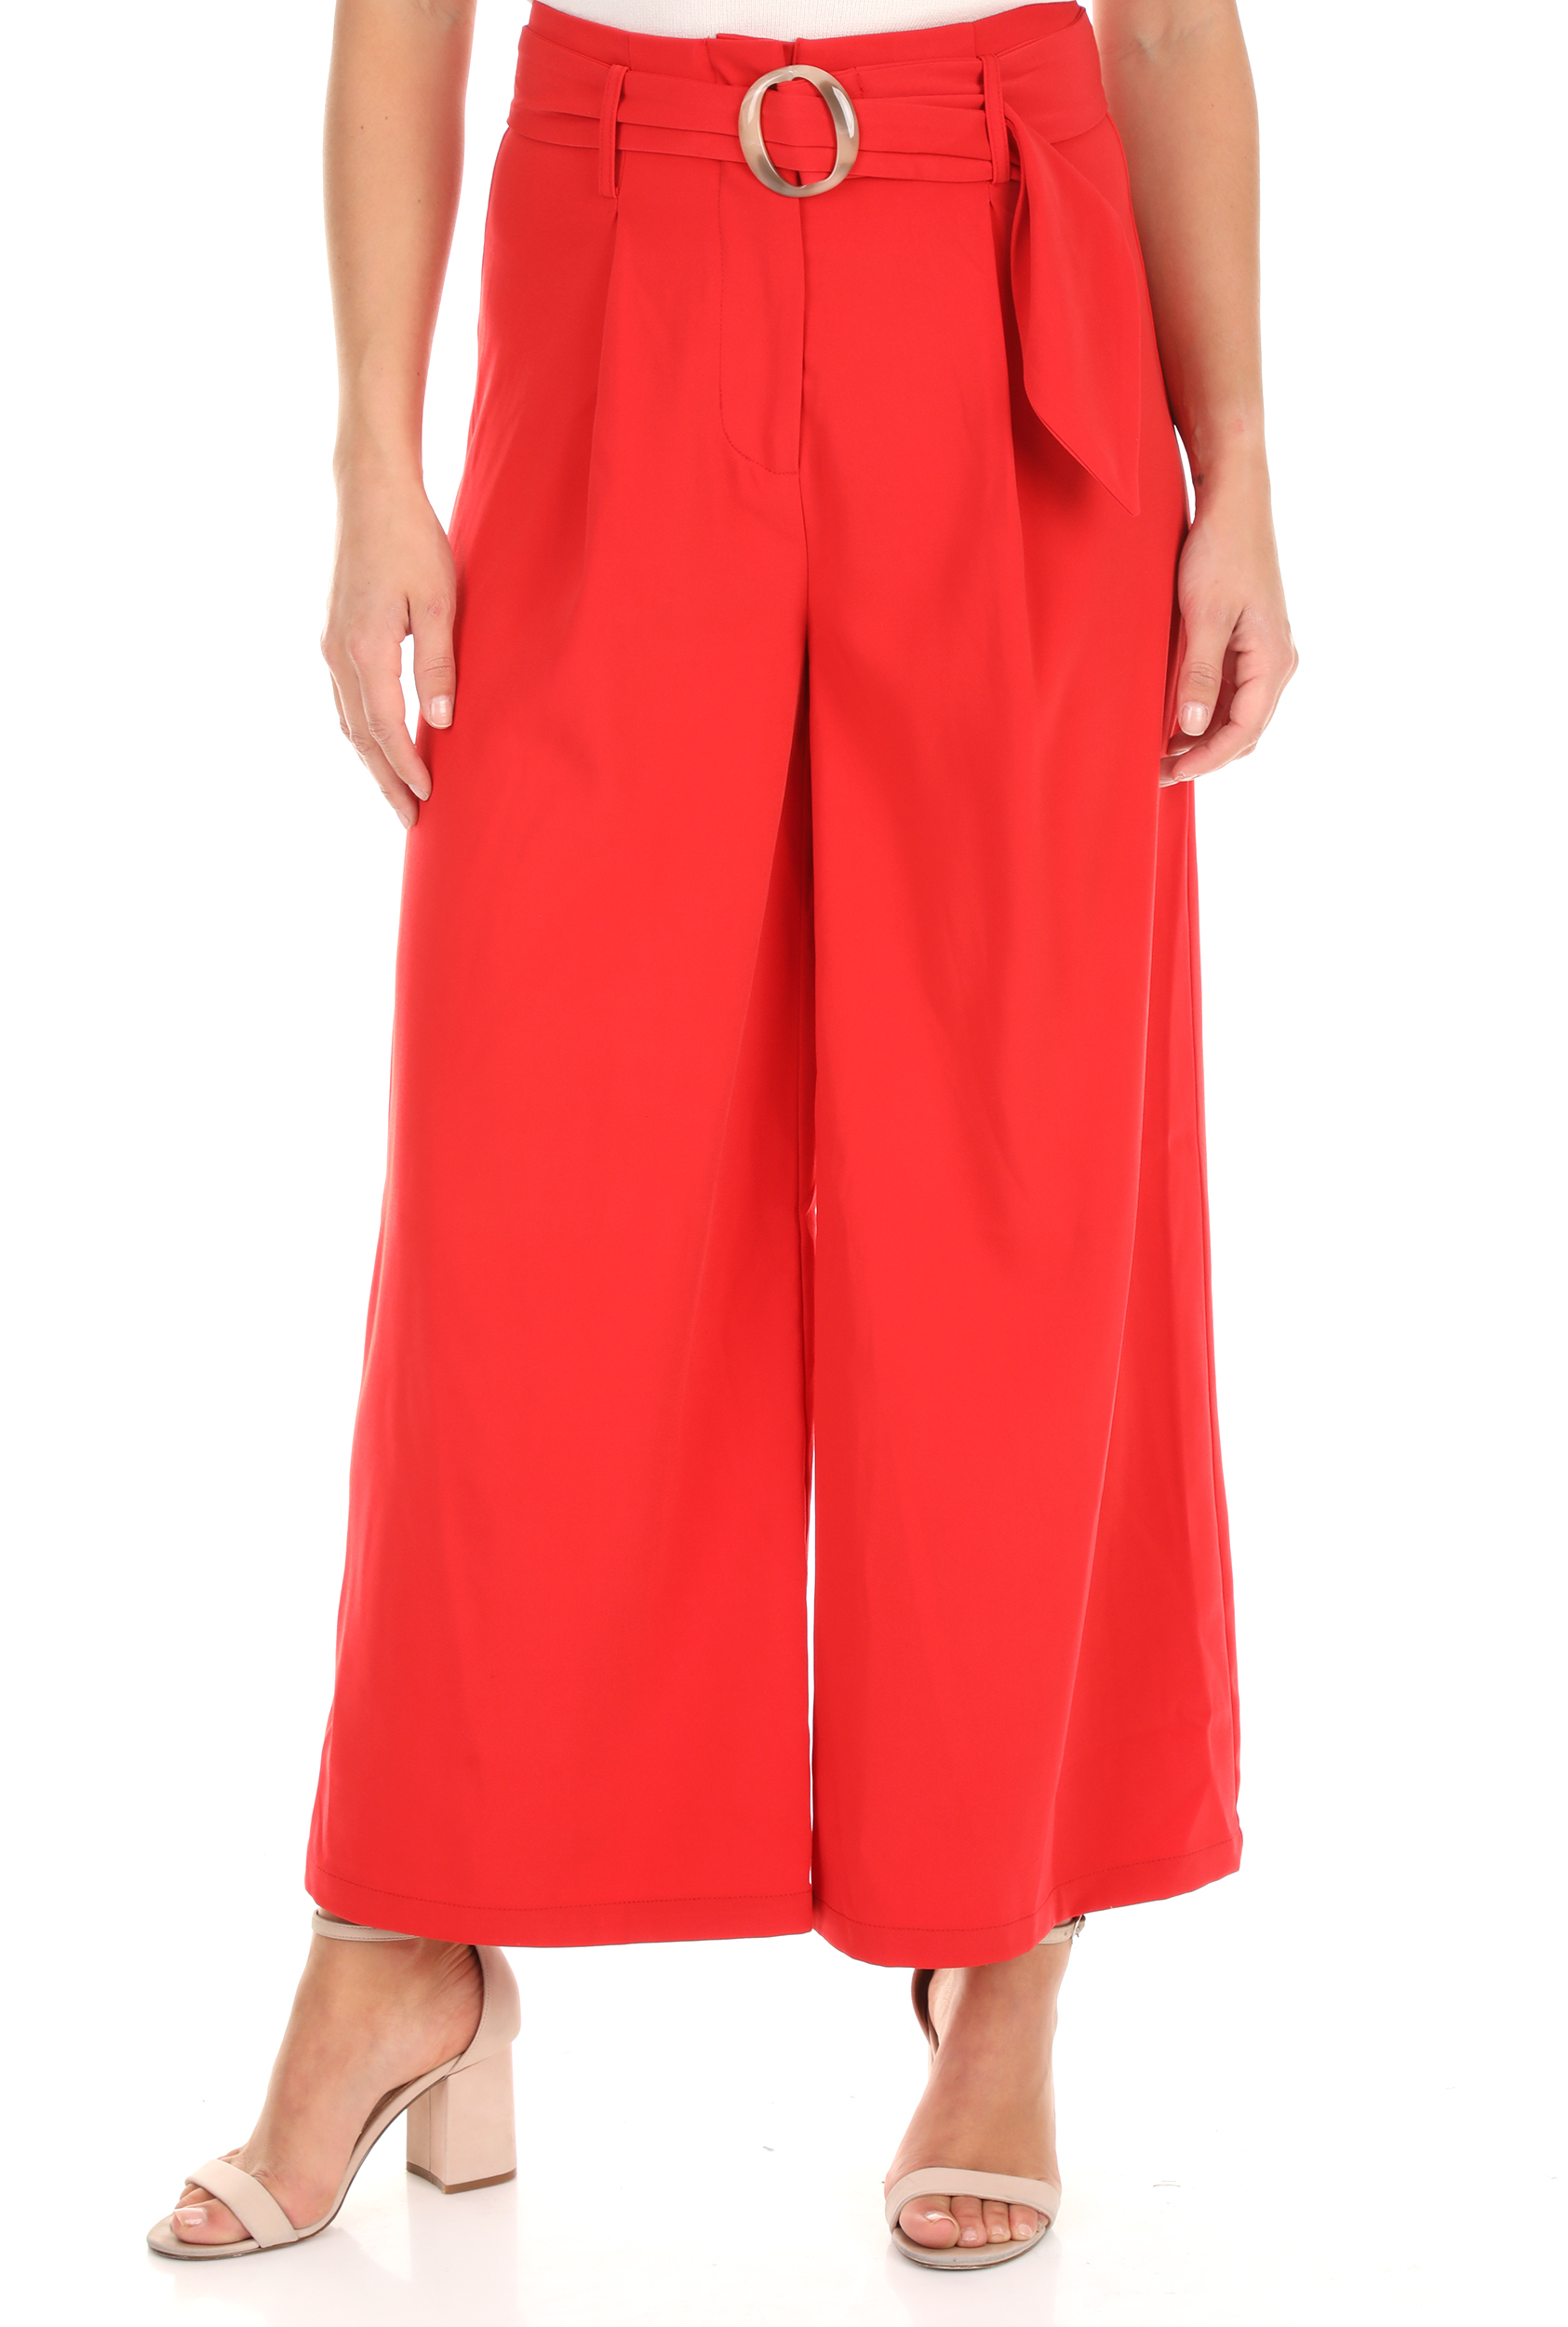 Γυναικεία/Ρούχα/Παντελόνια/Cropped MOLLY BRACKEN - Γυναικείο παντελόνι MOLLY BRACKEN κόκκινο